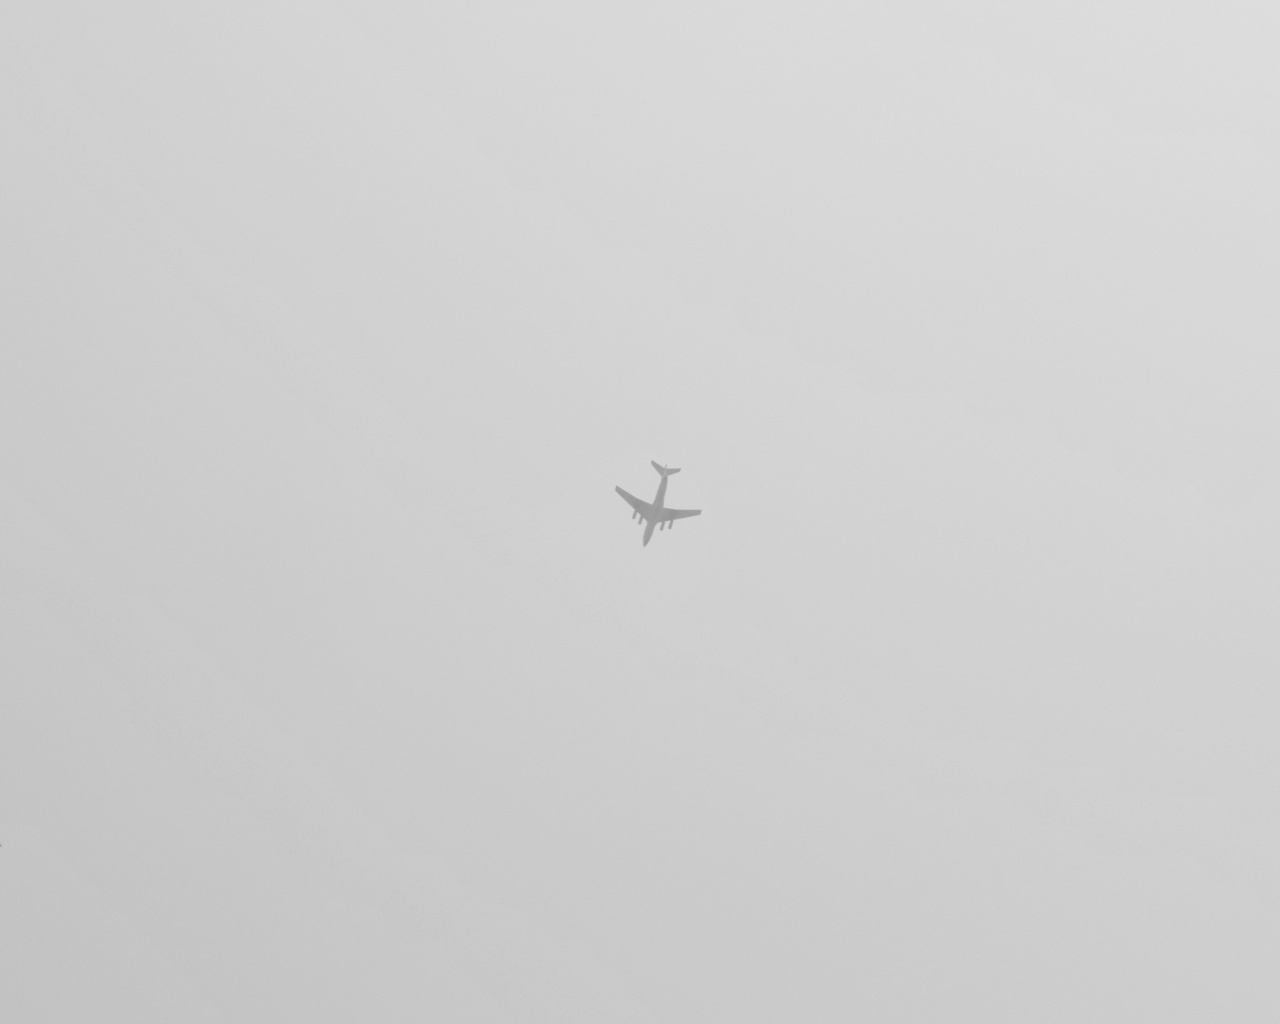 Airplane High In The Sky screenshot #1 1280x1024